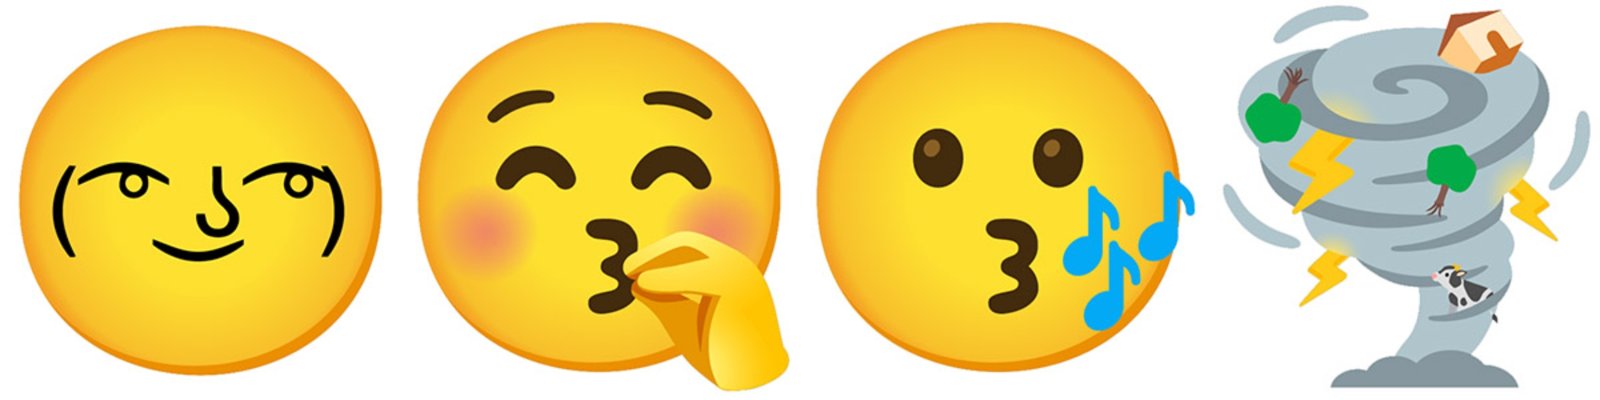 Gboard 10 emojis combo